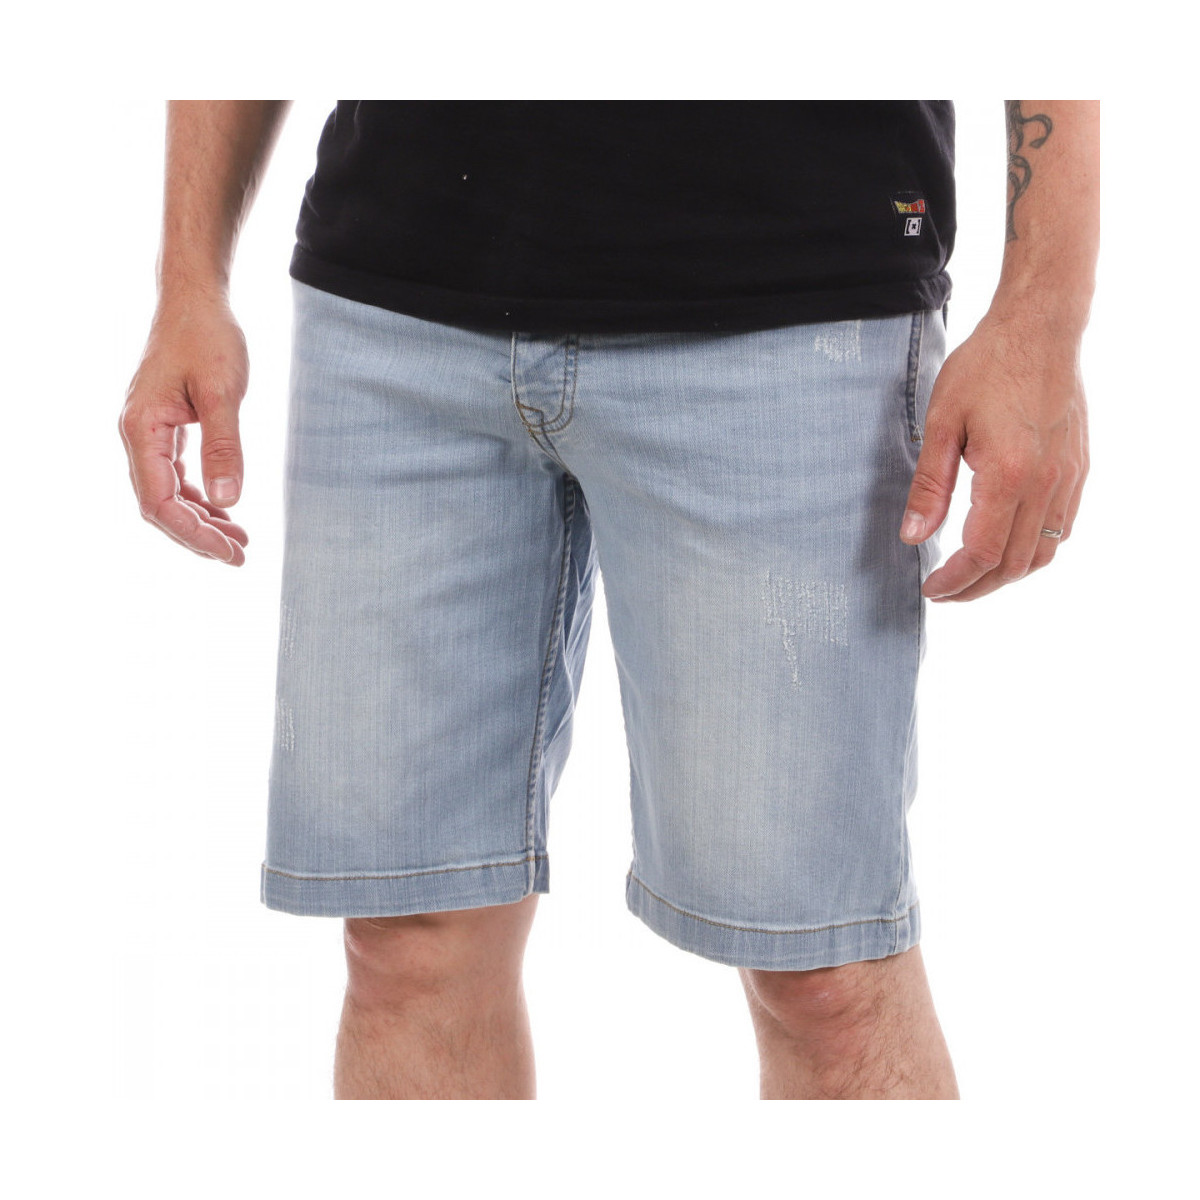 Vêtements Homme Shorts / Bermudas Lee Cooper LEE-008083 Bleu